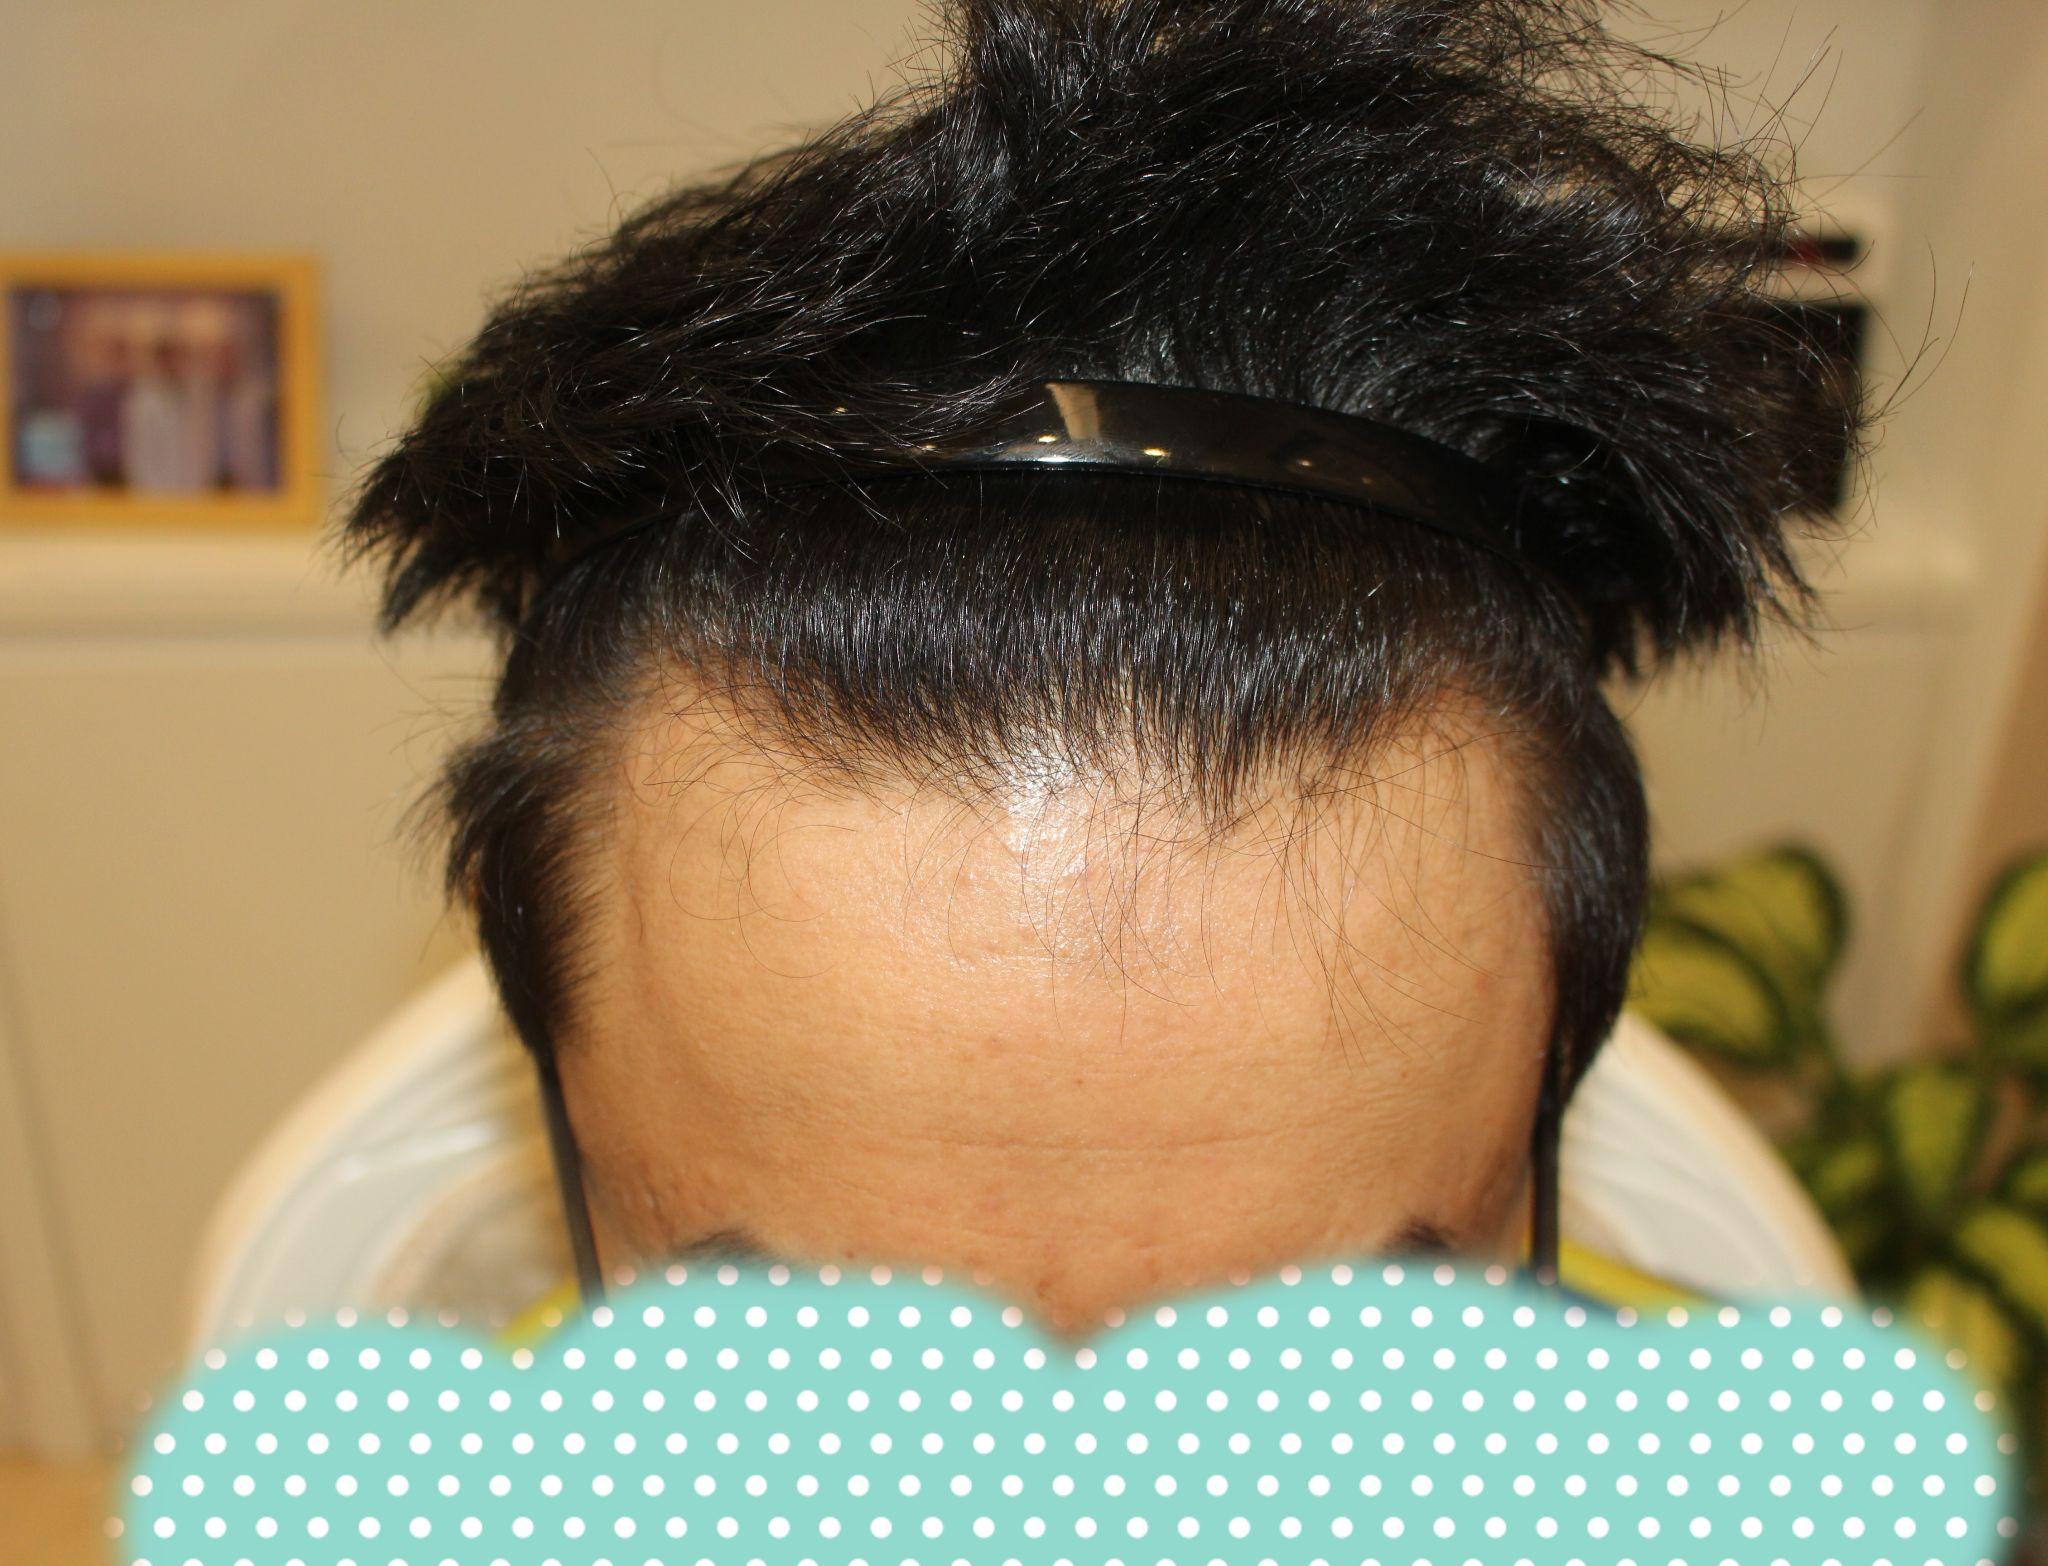 头发移植后有伤疤有什么补救方法？-纹发和植发哪个效果好|纹发需要多少钱|纹发能保持几年|纹发机构--馥植纹发机构